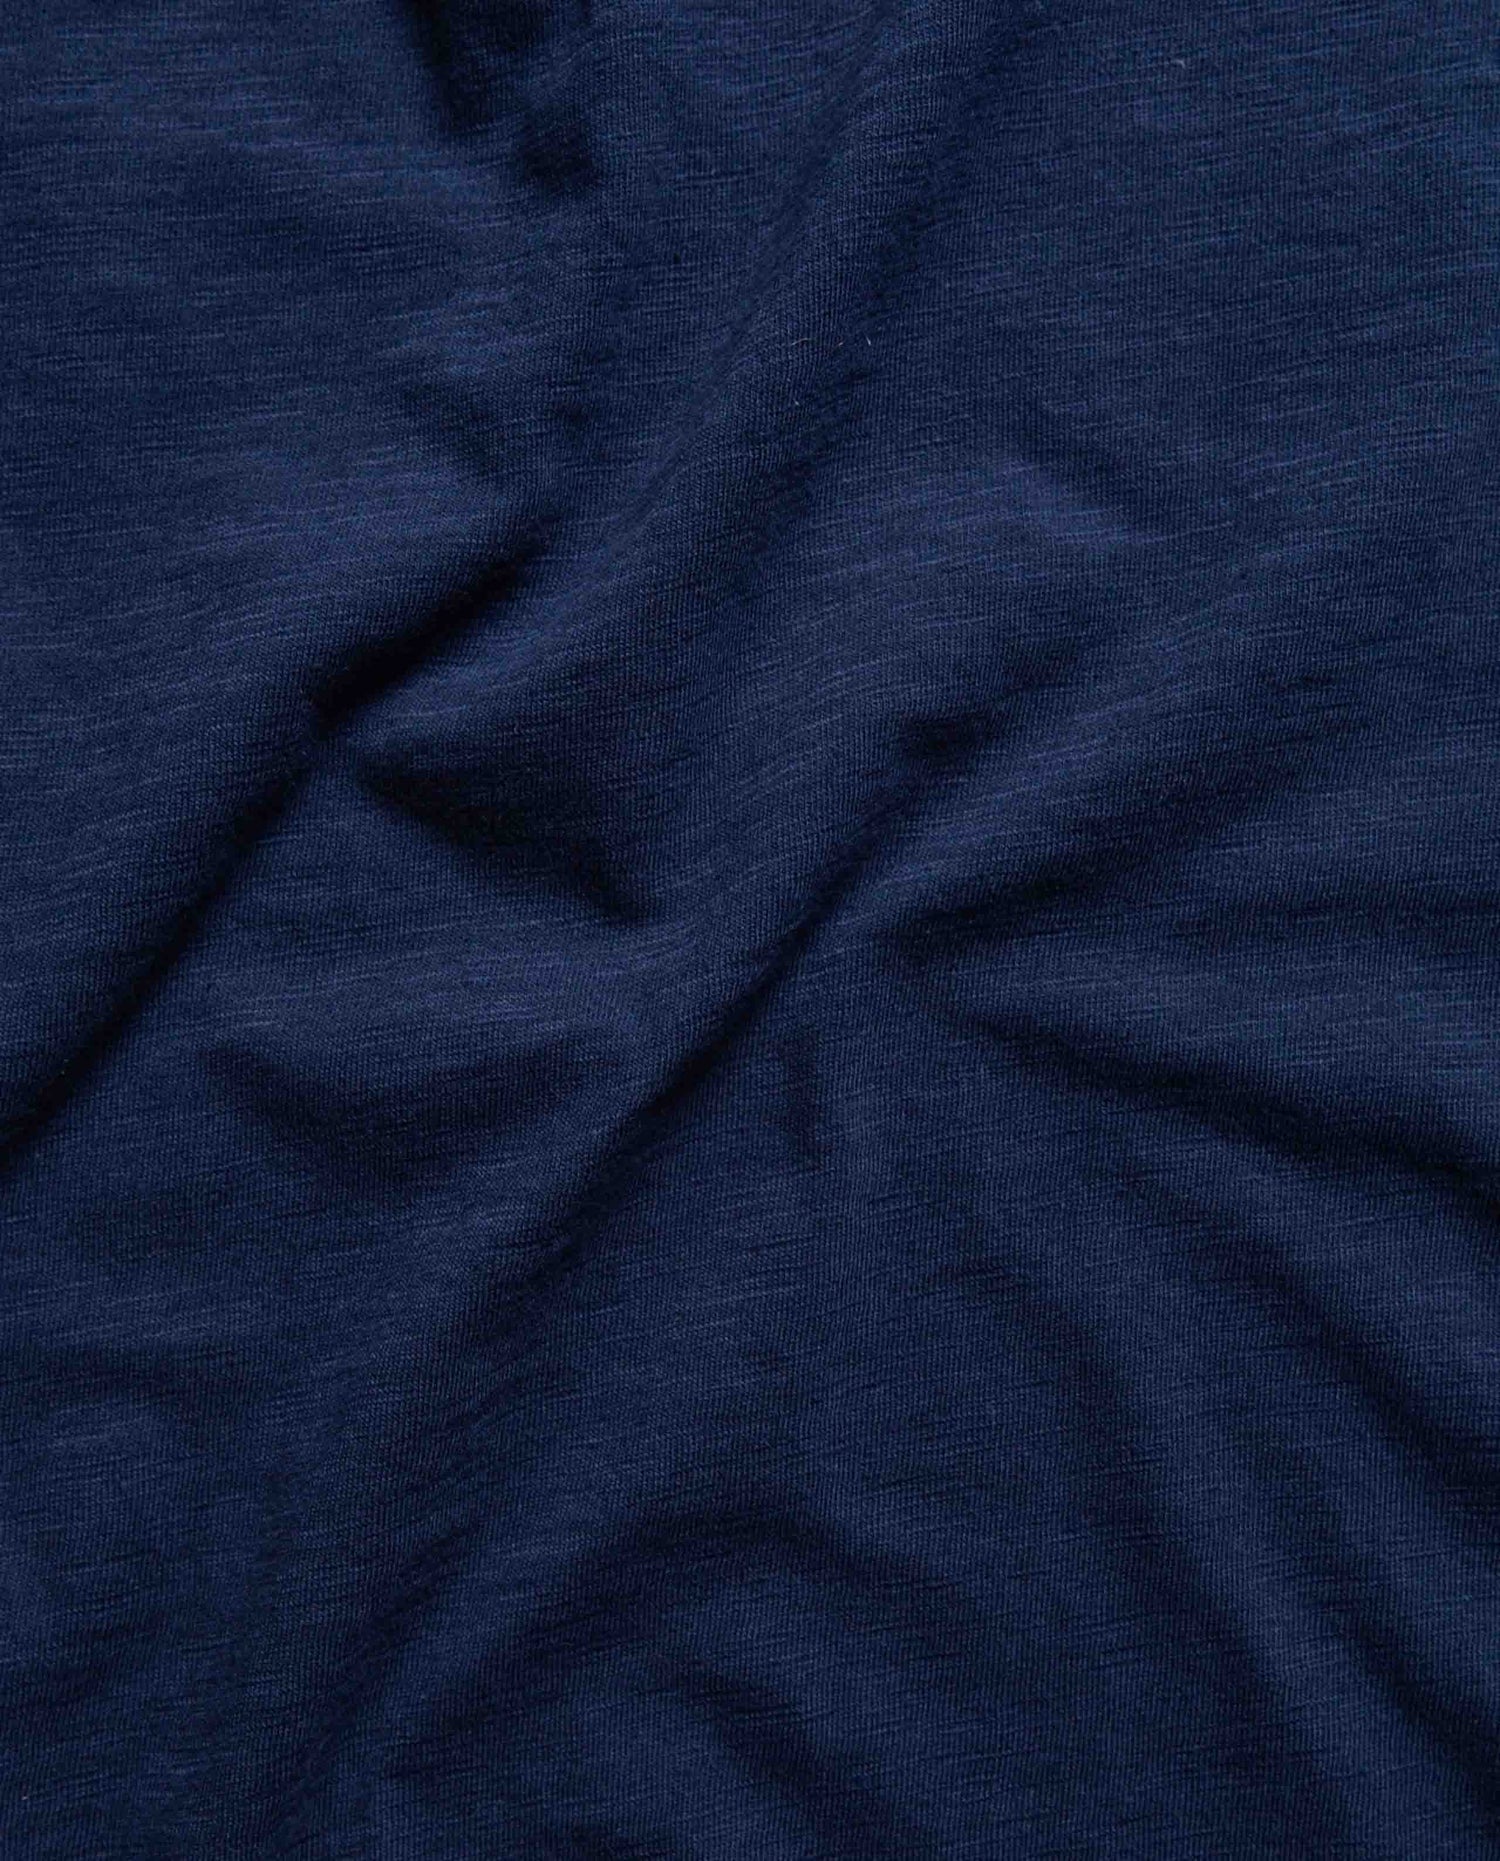 Marché Commun tshirt flammé coton bio bleu marine nudie jeans